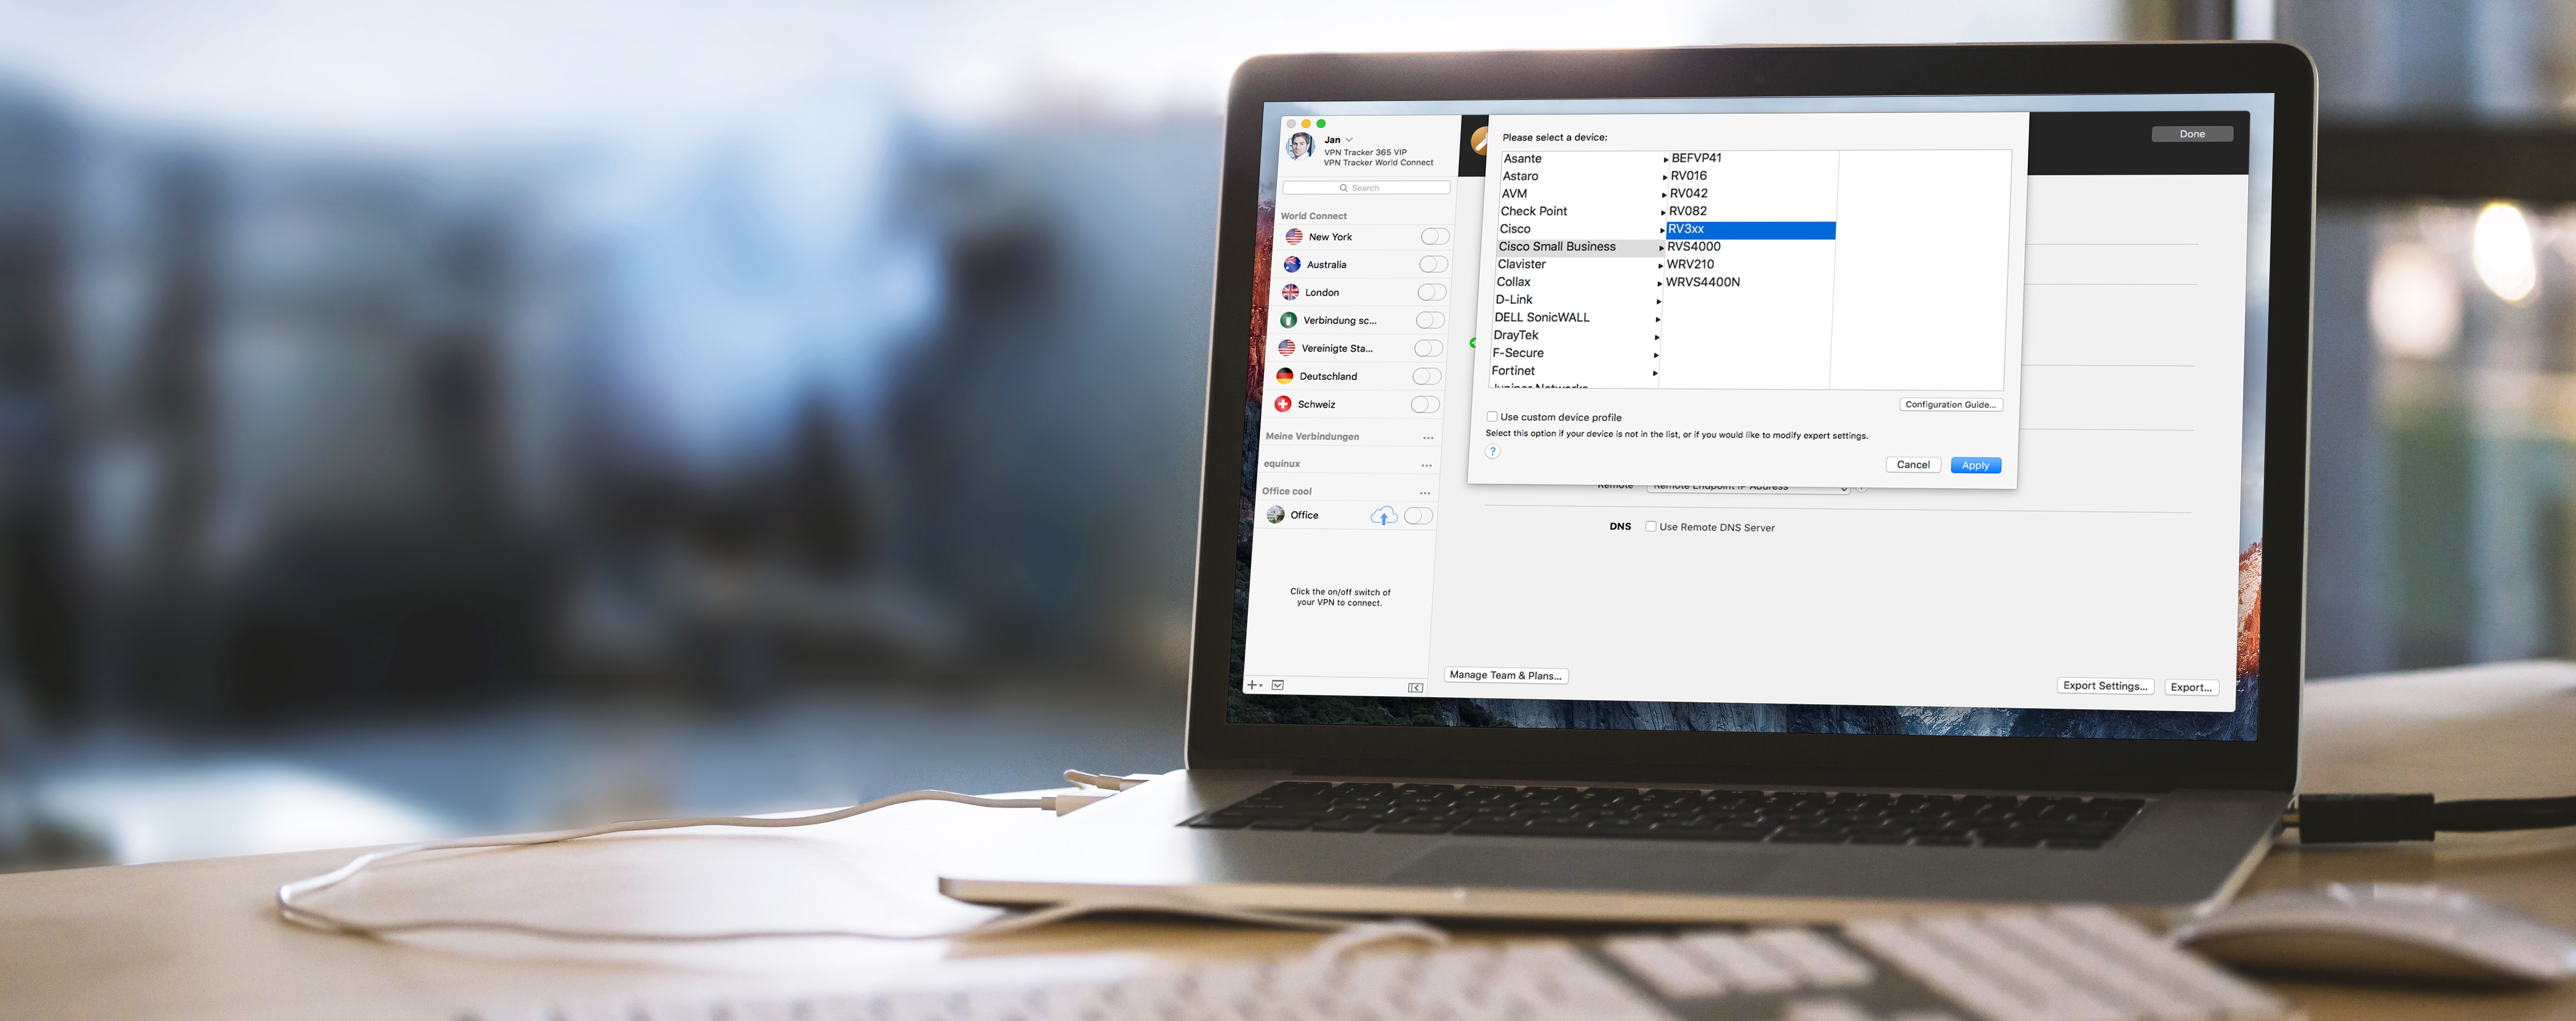 VPN Tracker ist ready für macOS Sierra